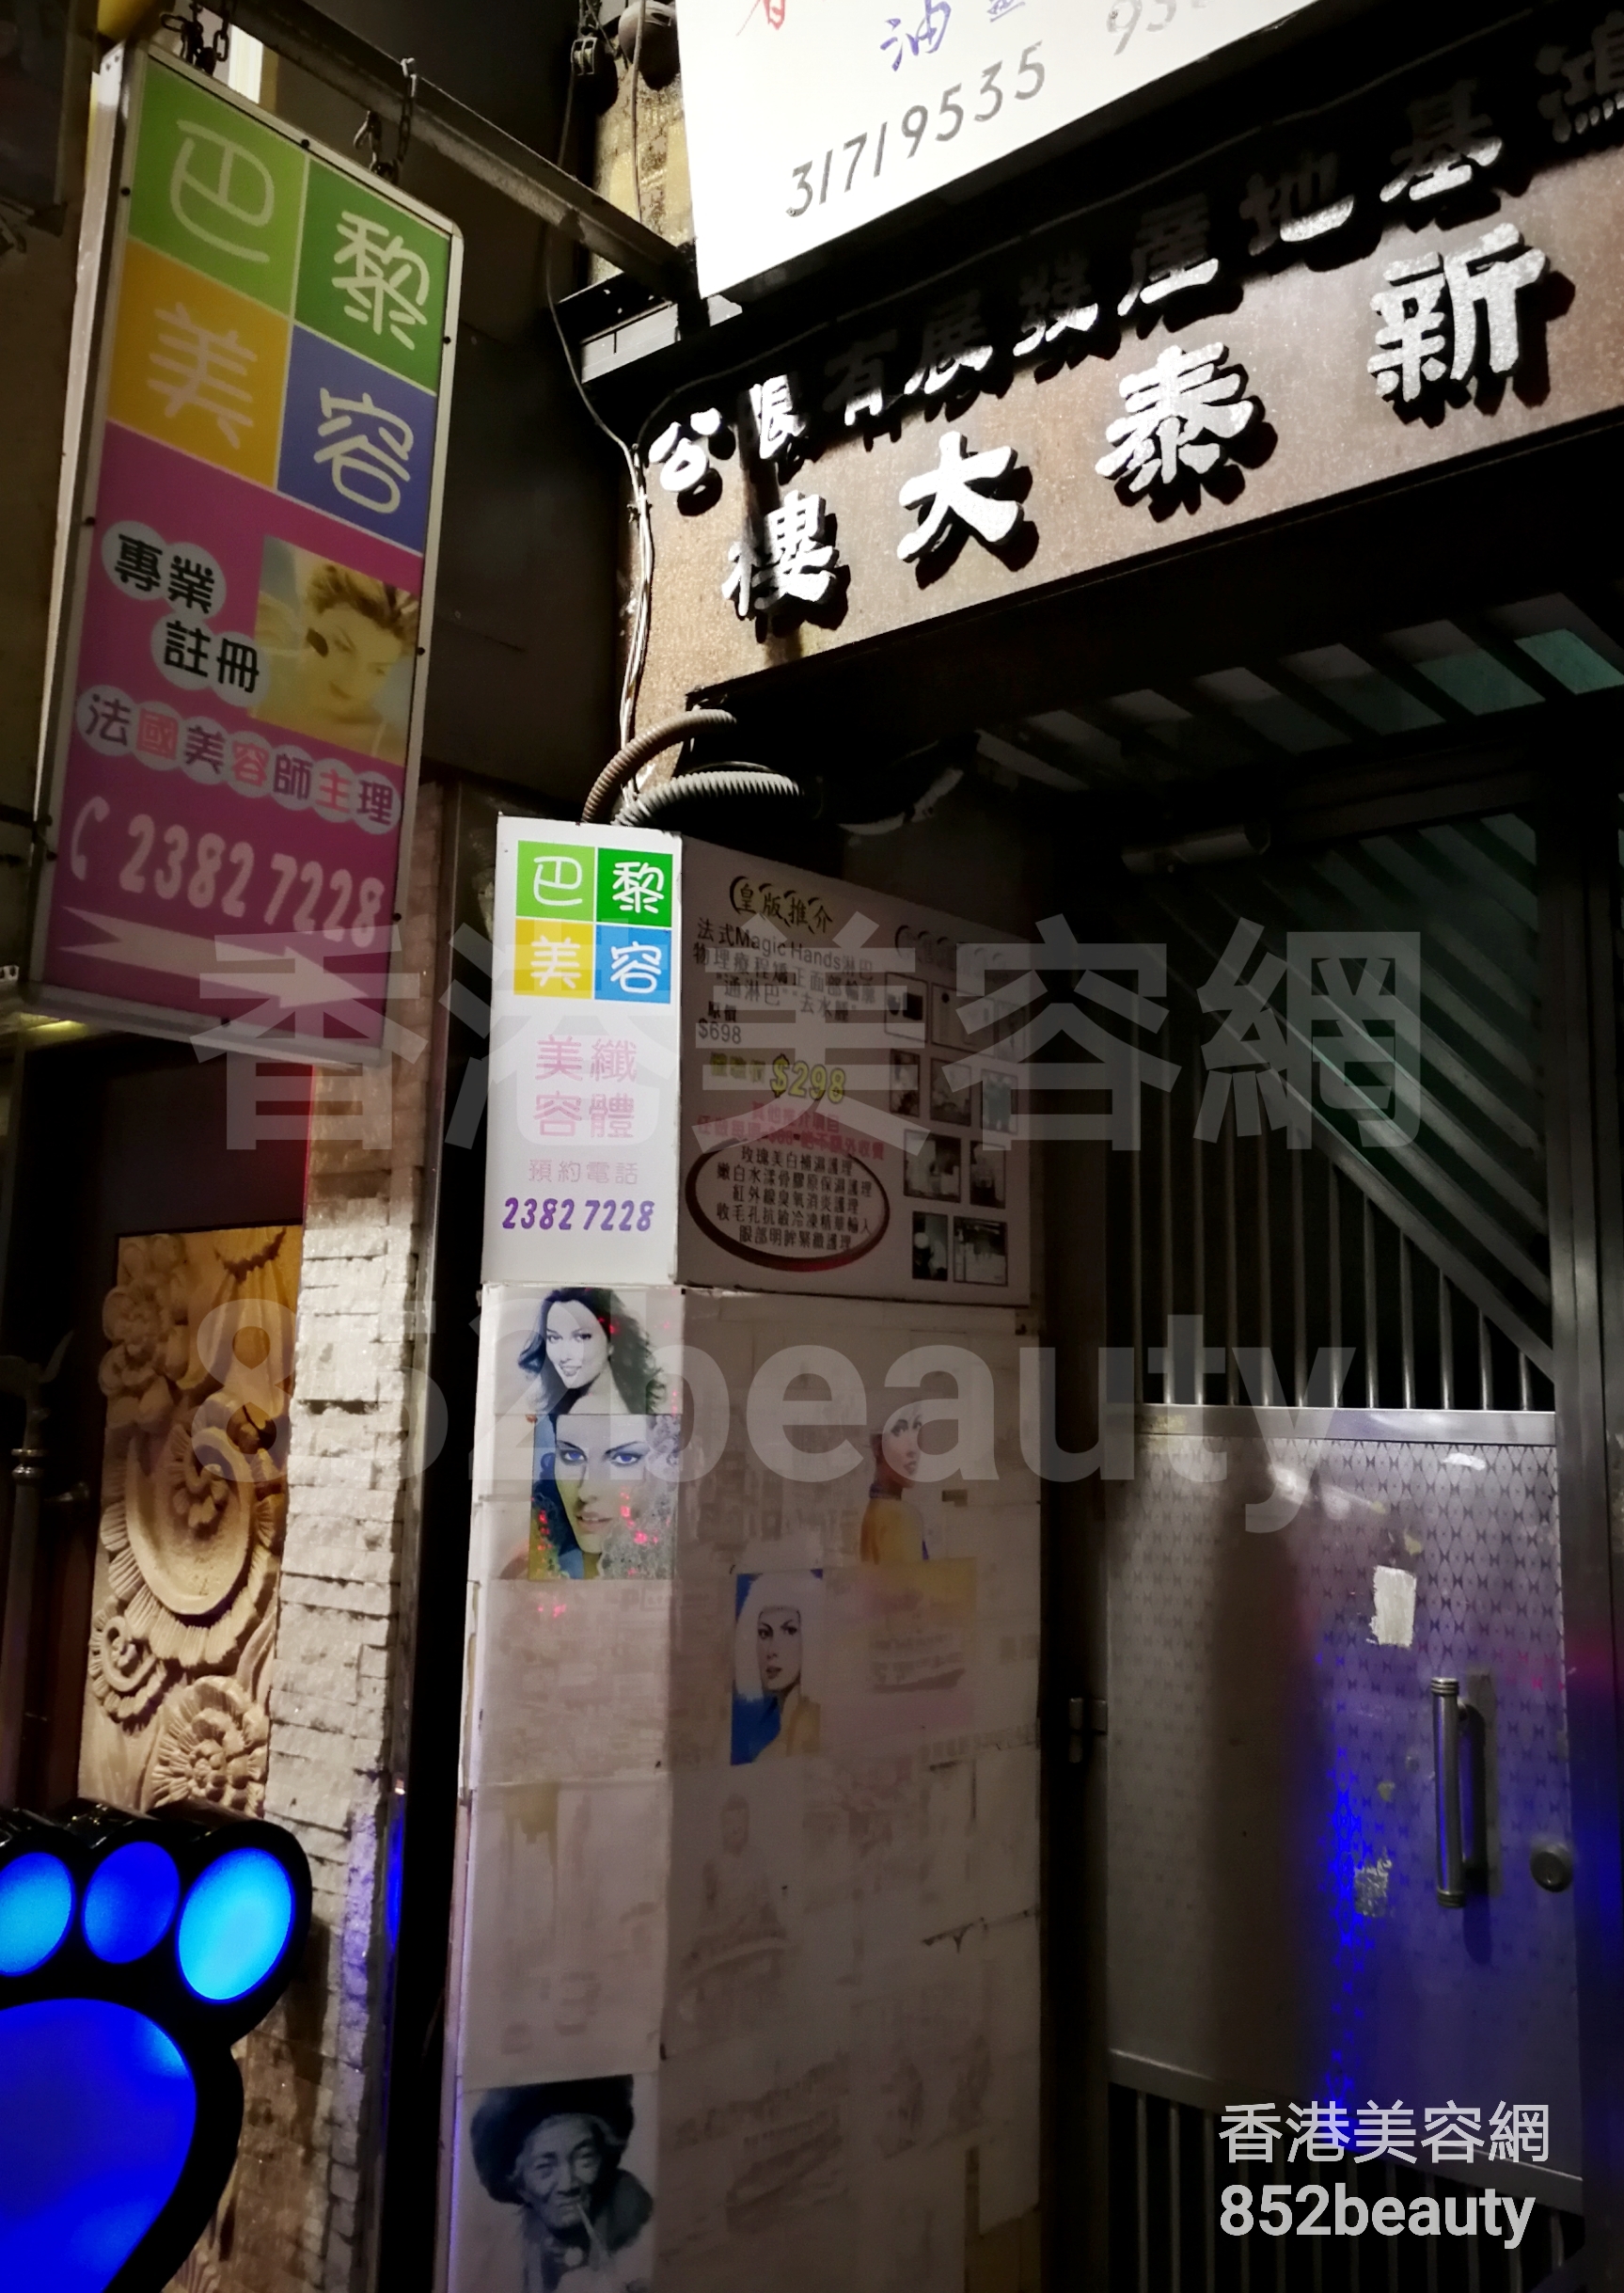 香港美容網 Hong Kong Beauty Salon 美容院 / 美容師: 巴黎美容